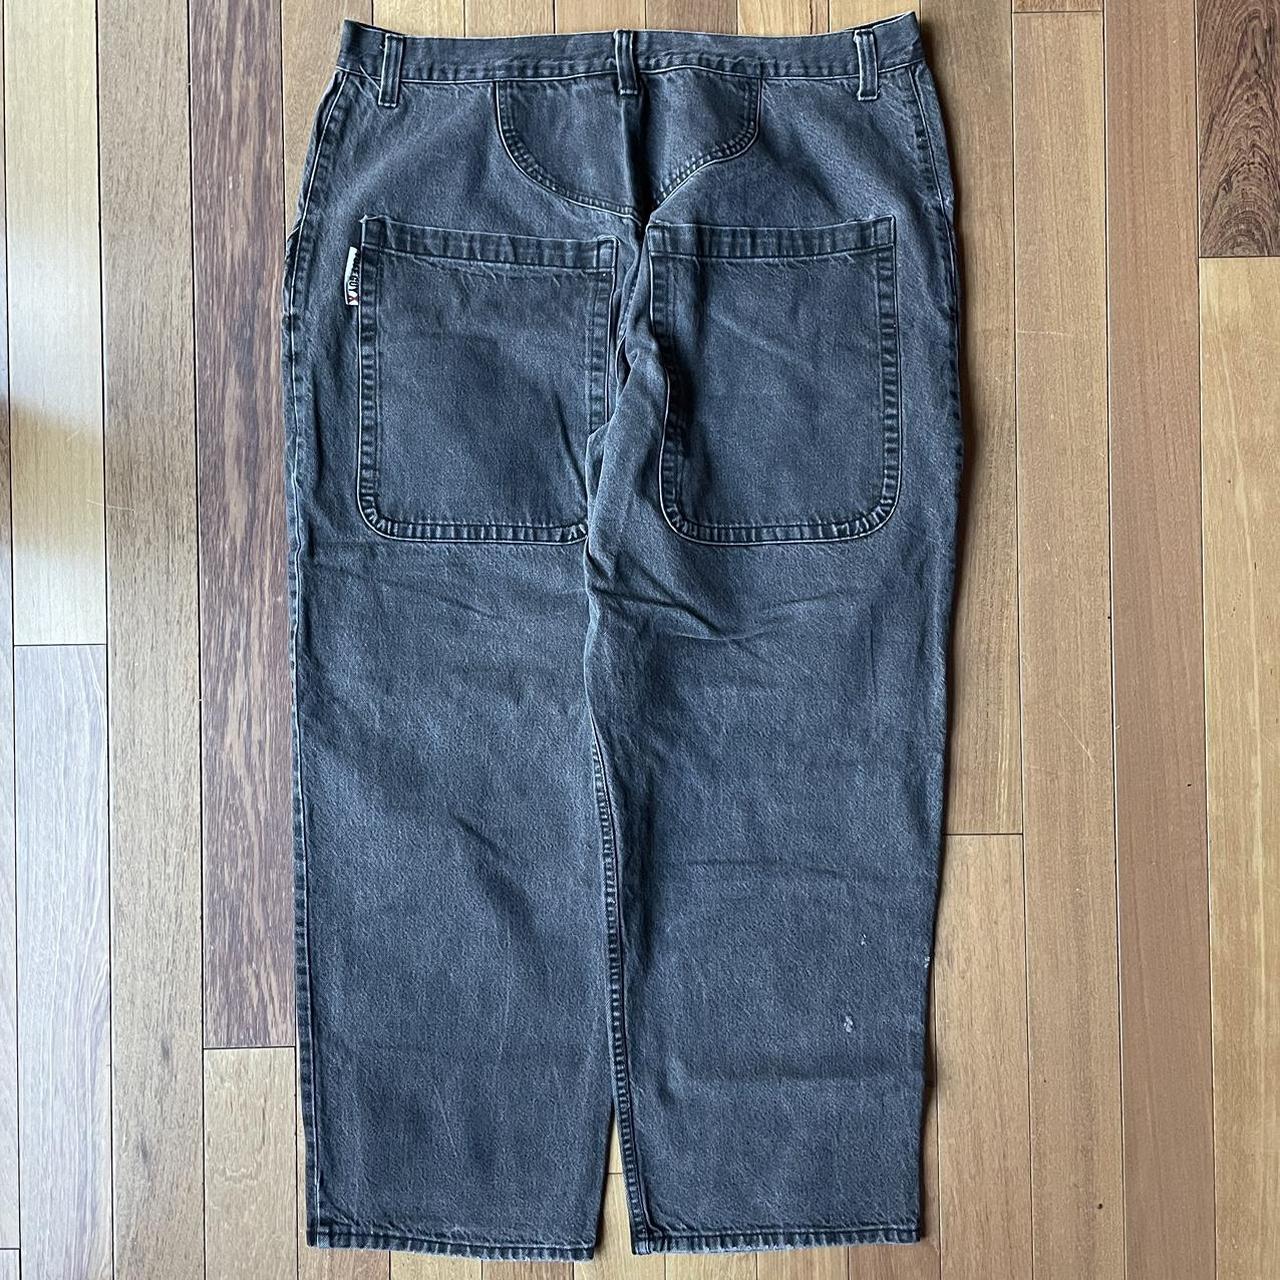 Vintage 90s Turf Guy Wideleg Jeans... - Depop